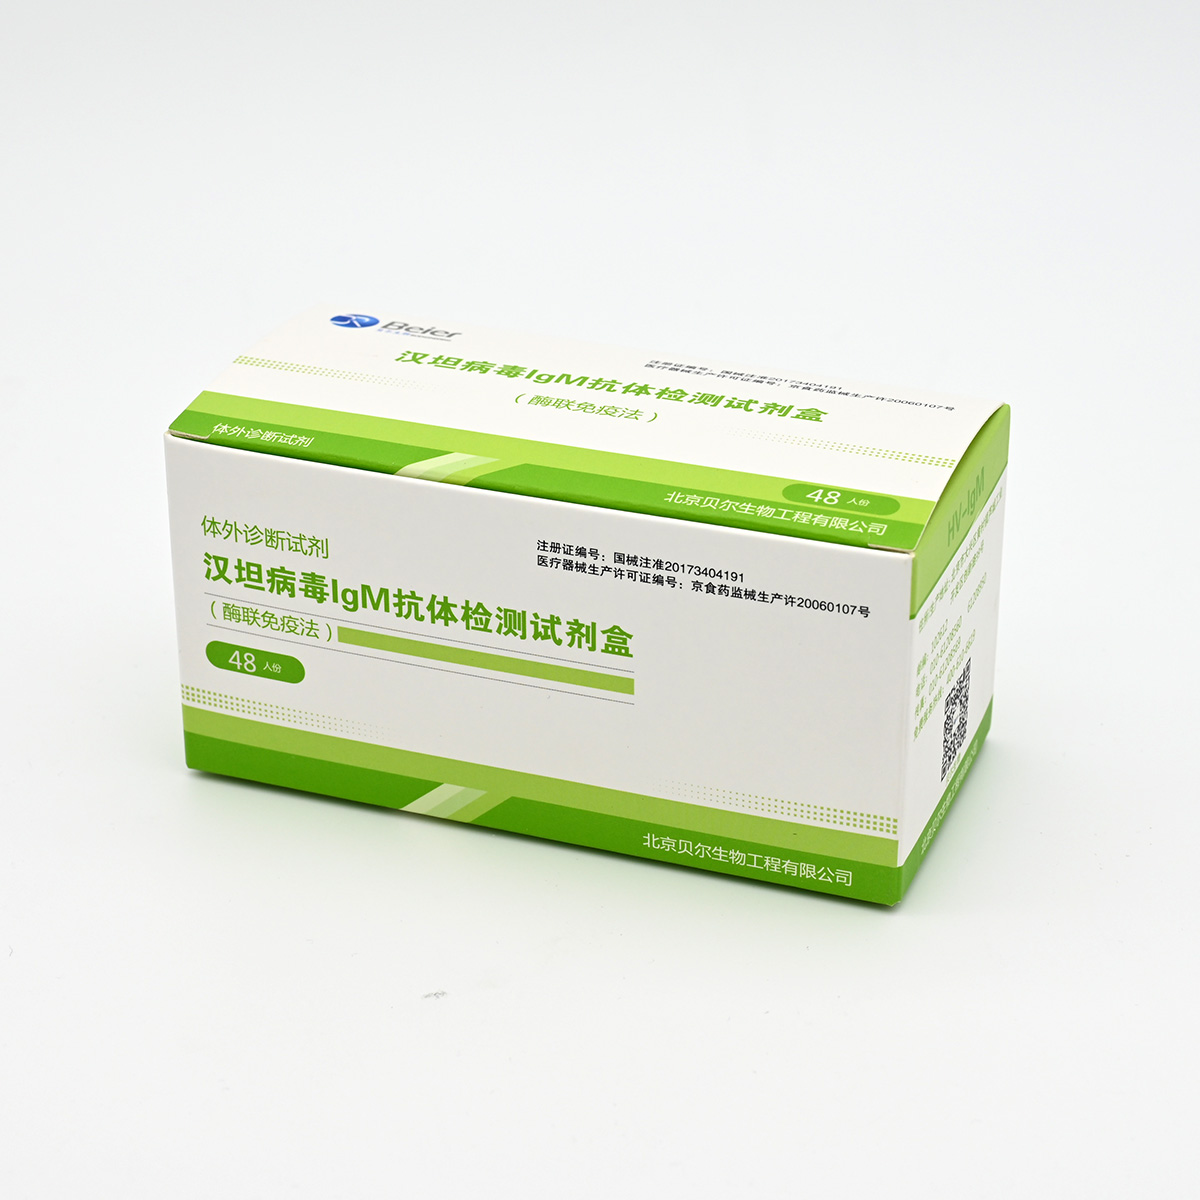 【贝尔】汉坦病毒IgM抗体检测试剂盒(酶联免疫法)